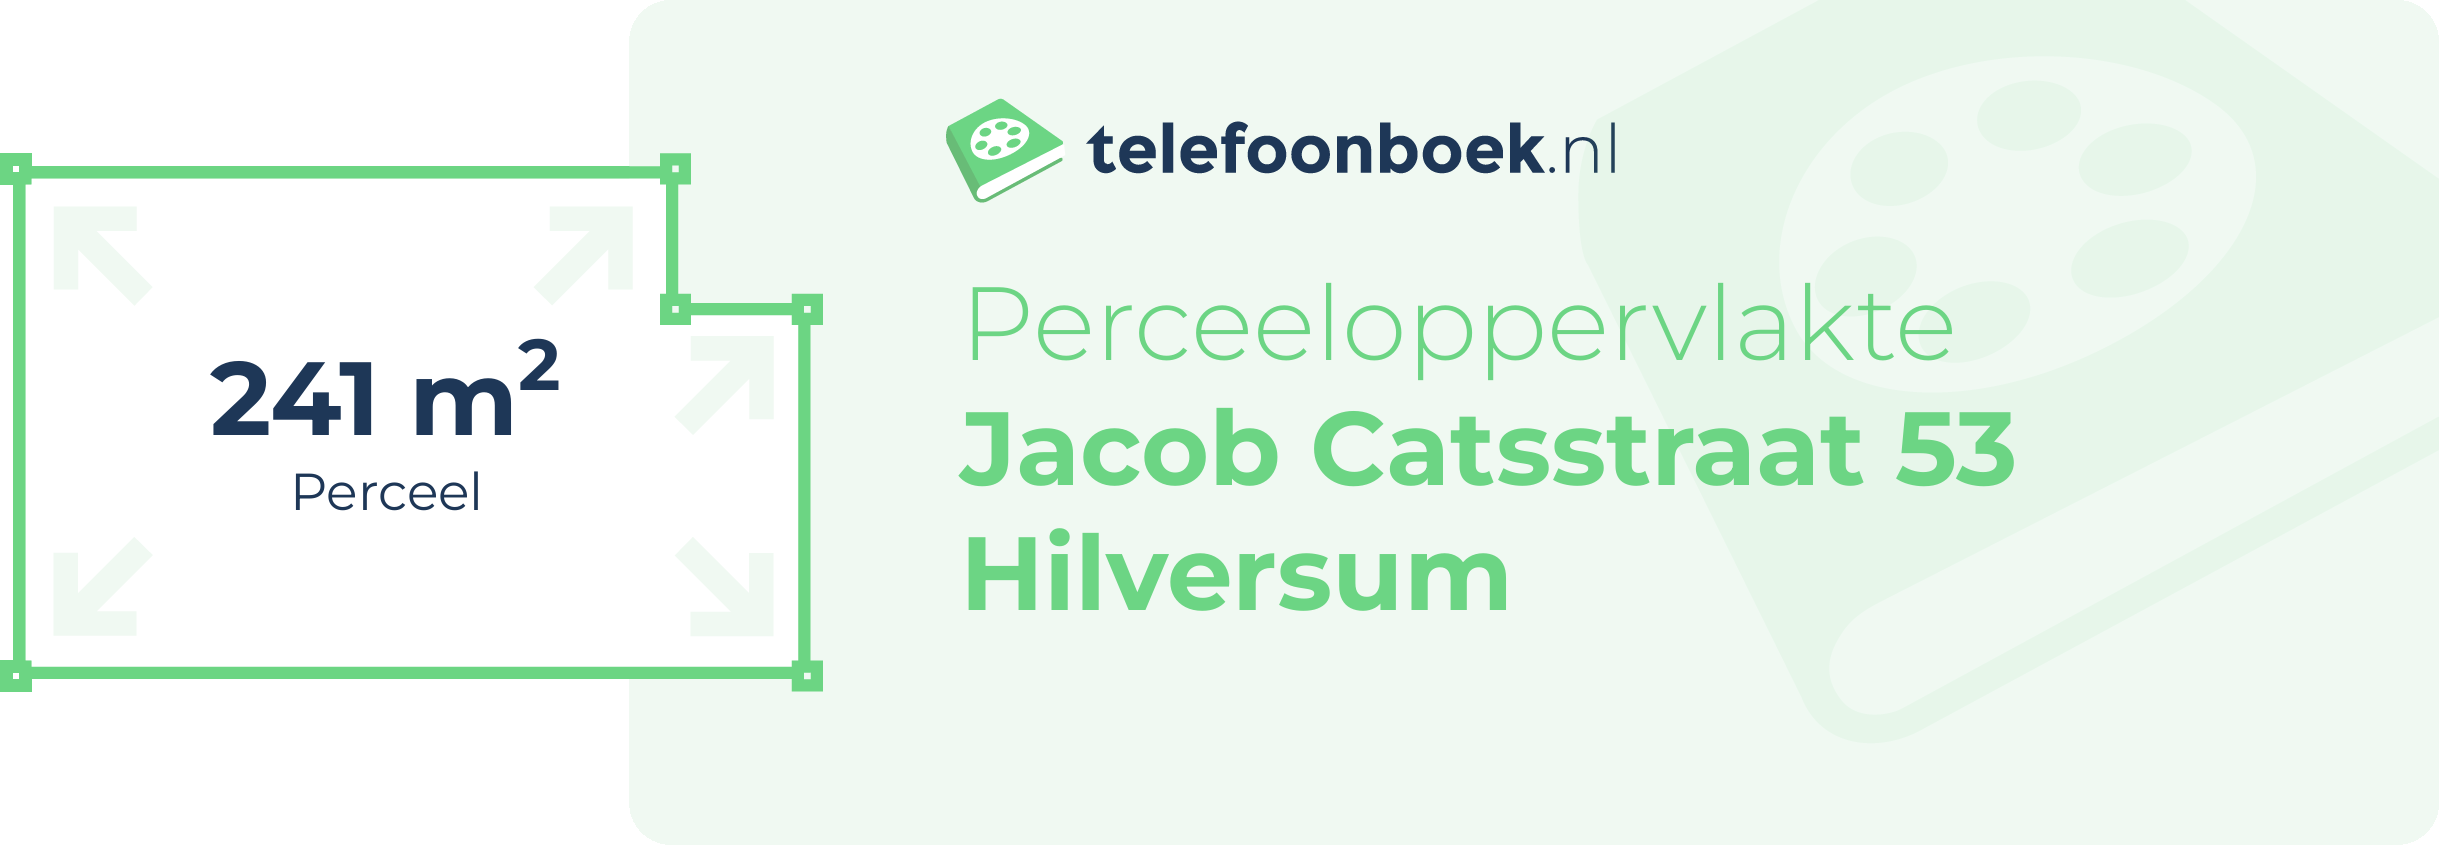 Perceeloppervlakte Jacob Catsstraat 53 Hilversum